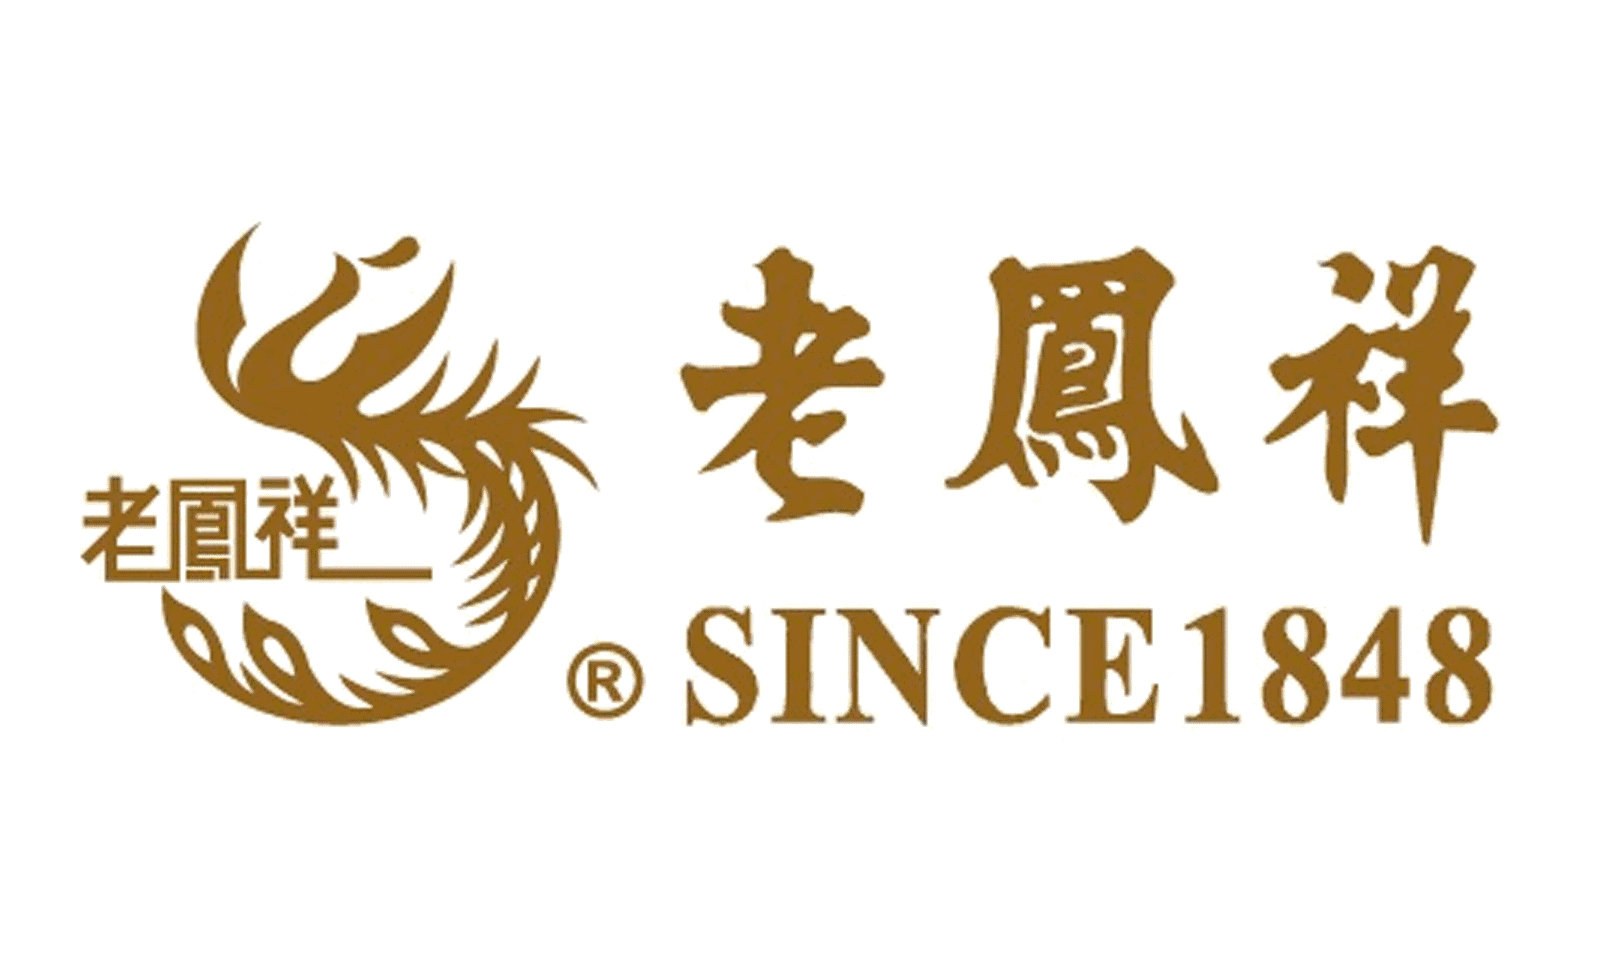 老凤祥logo水印图片